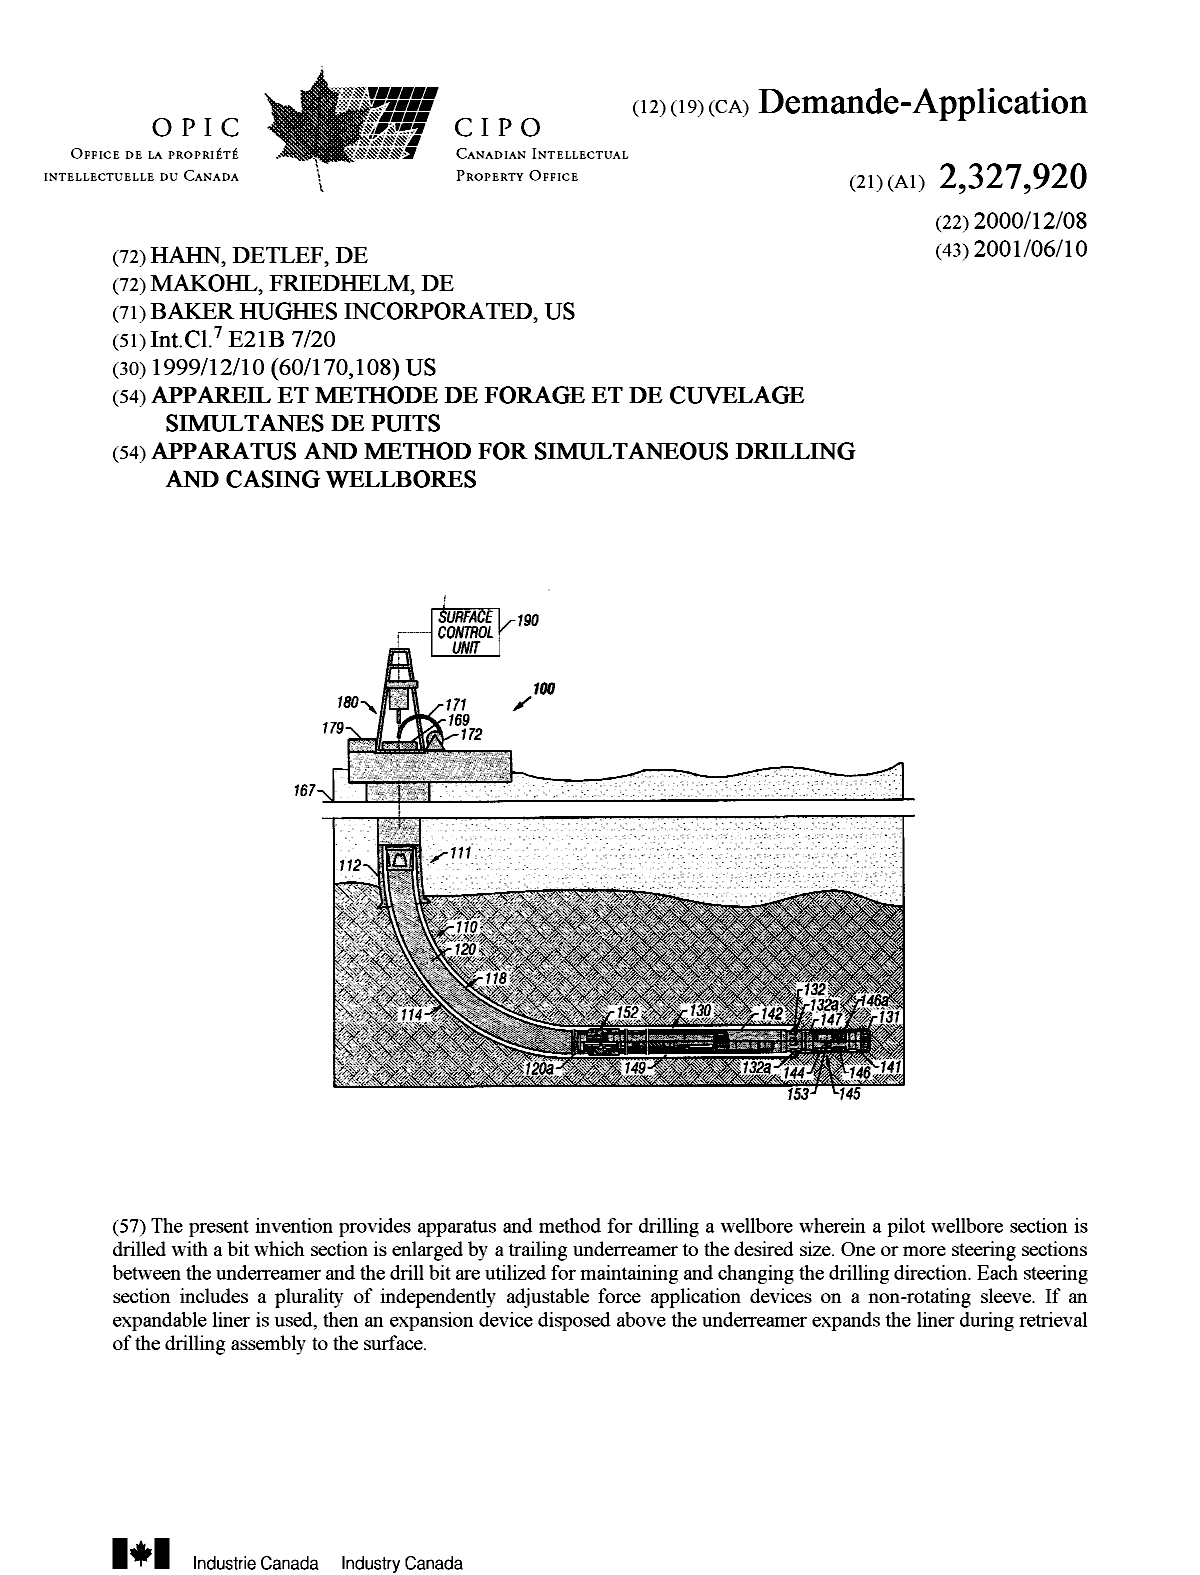 Document de brevet canadien 2327920. Page couverture 20010605. Image 1 de 1